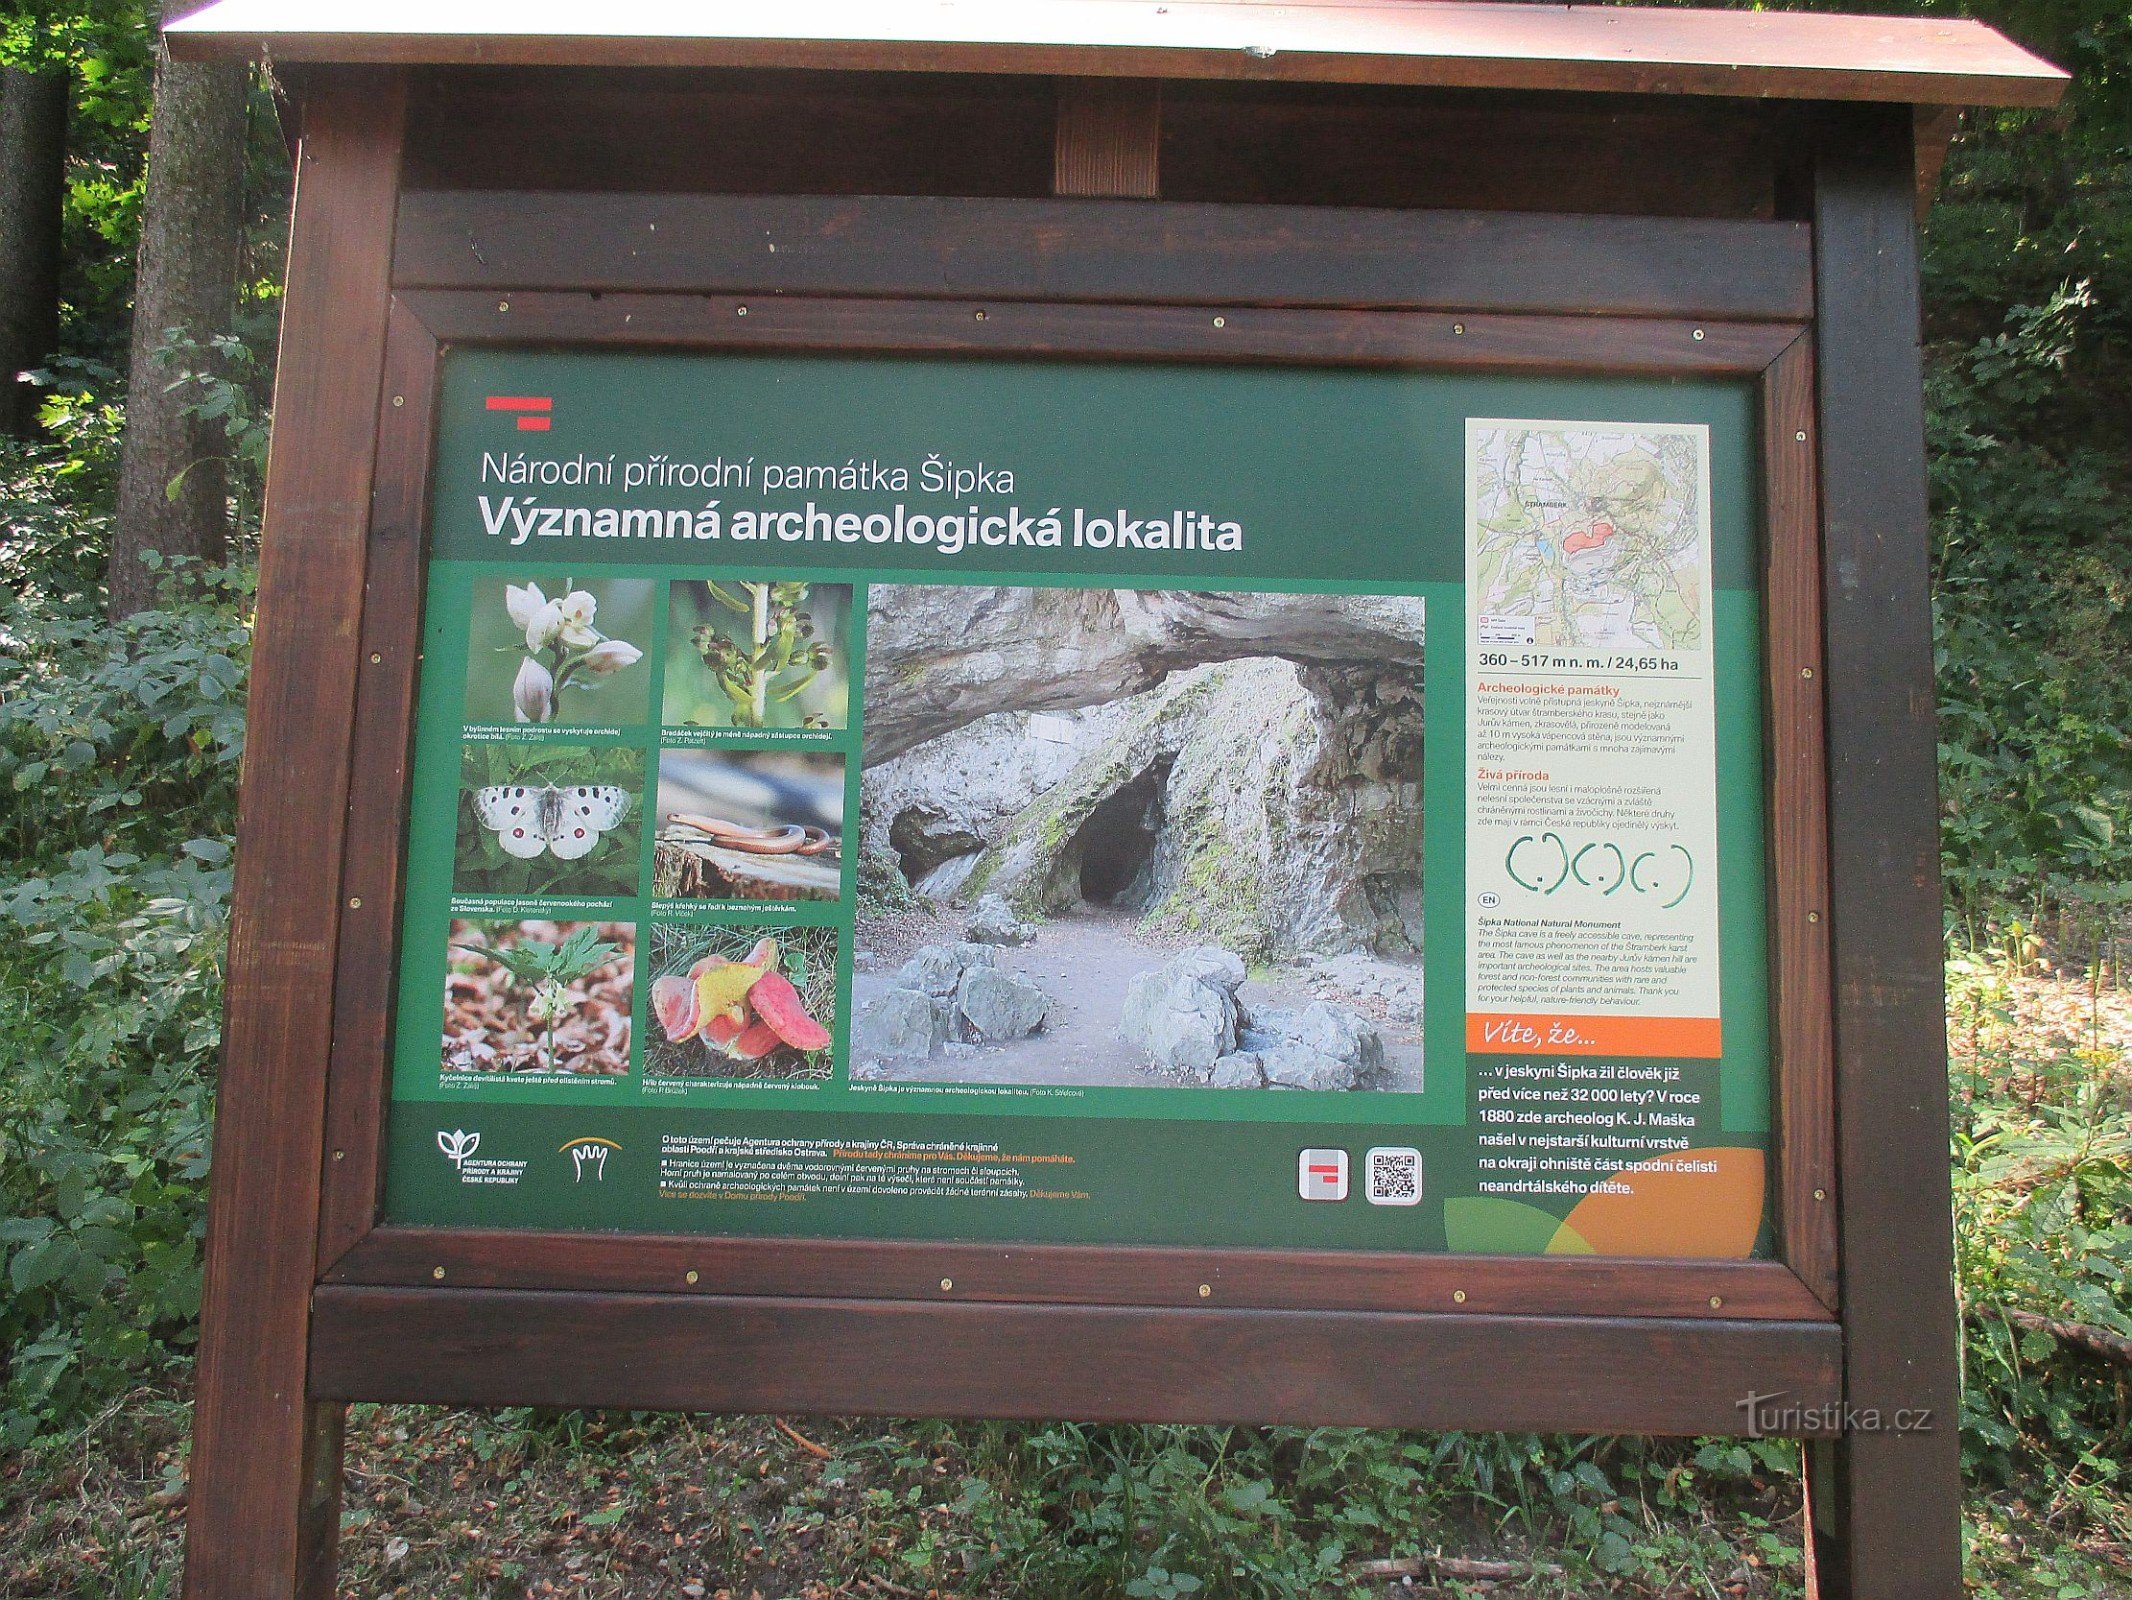 Šipka National Natural Monument